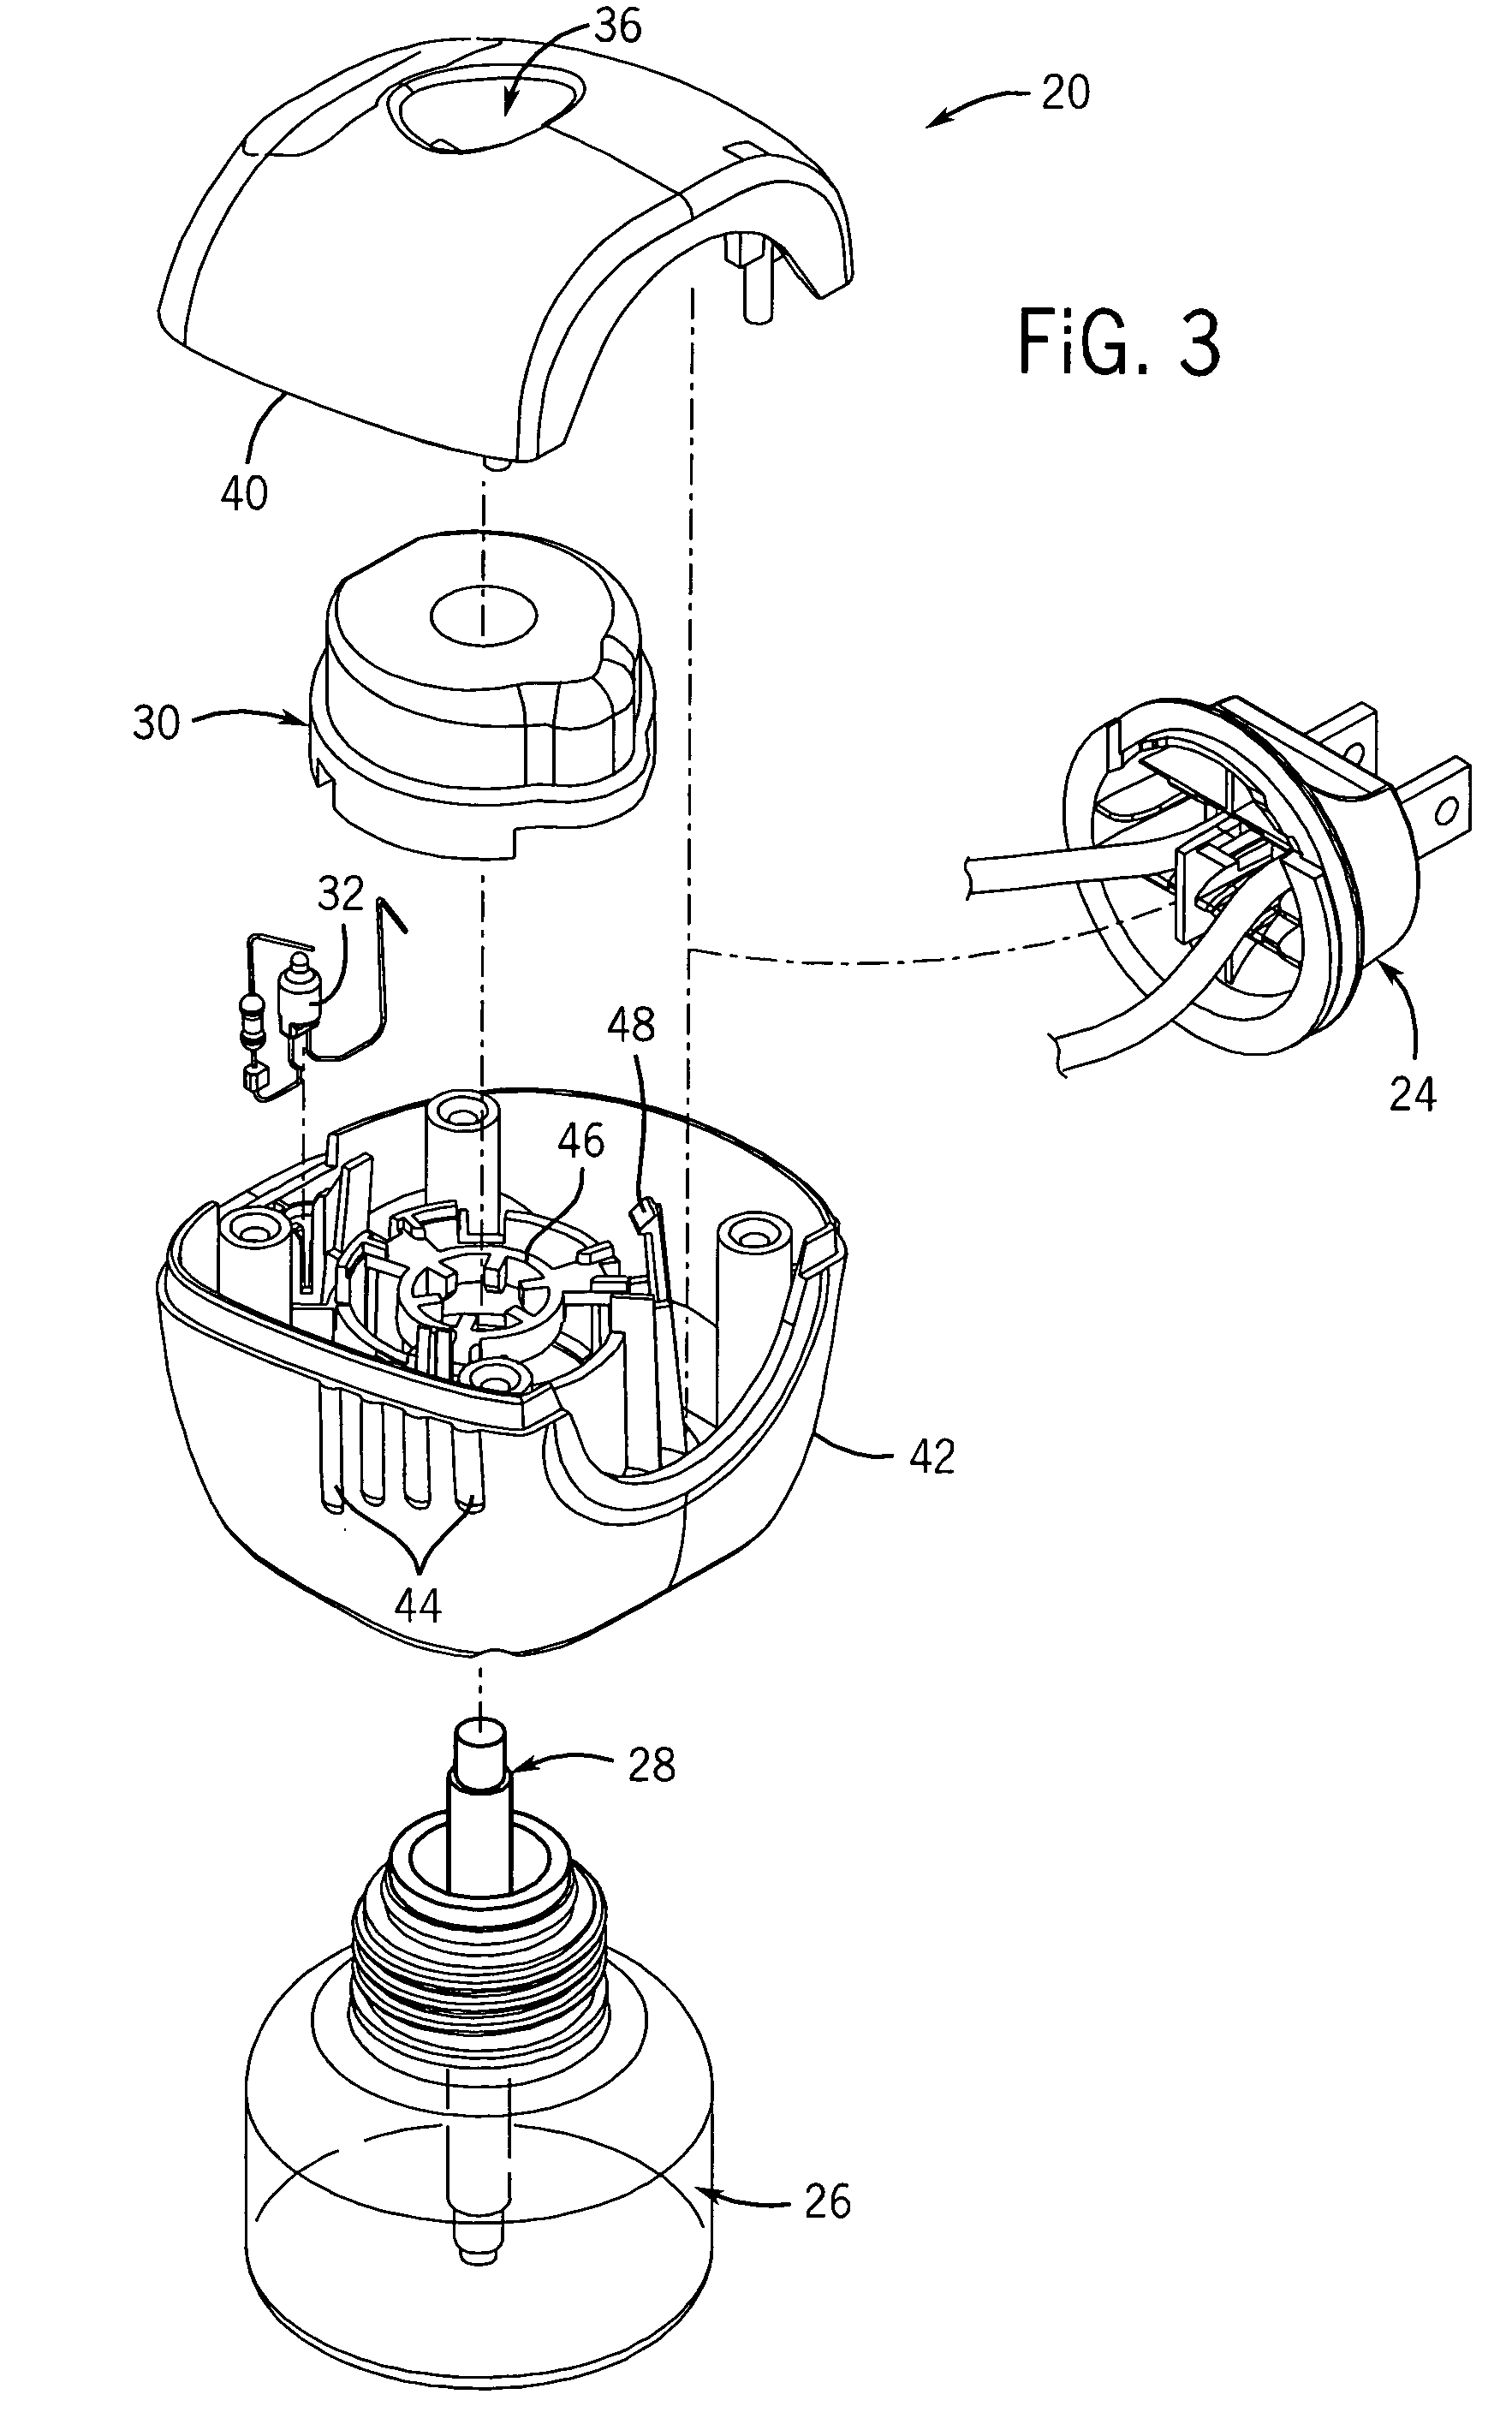 Electric liquid volatile dispenser